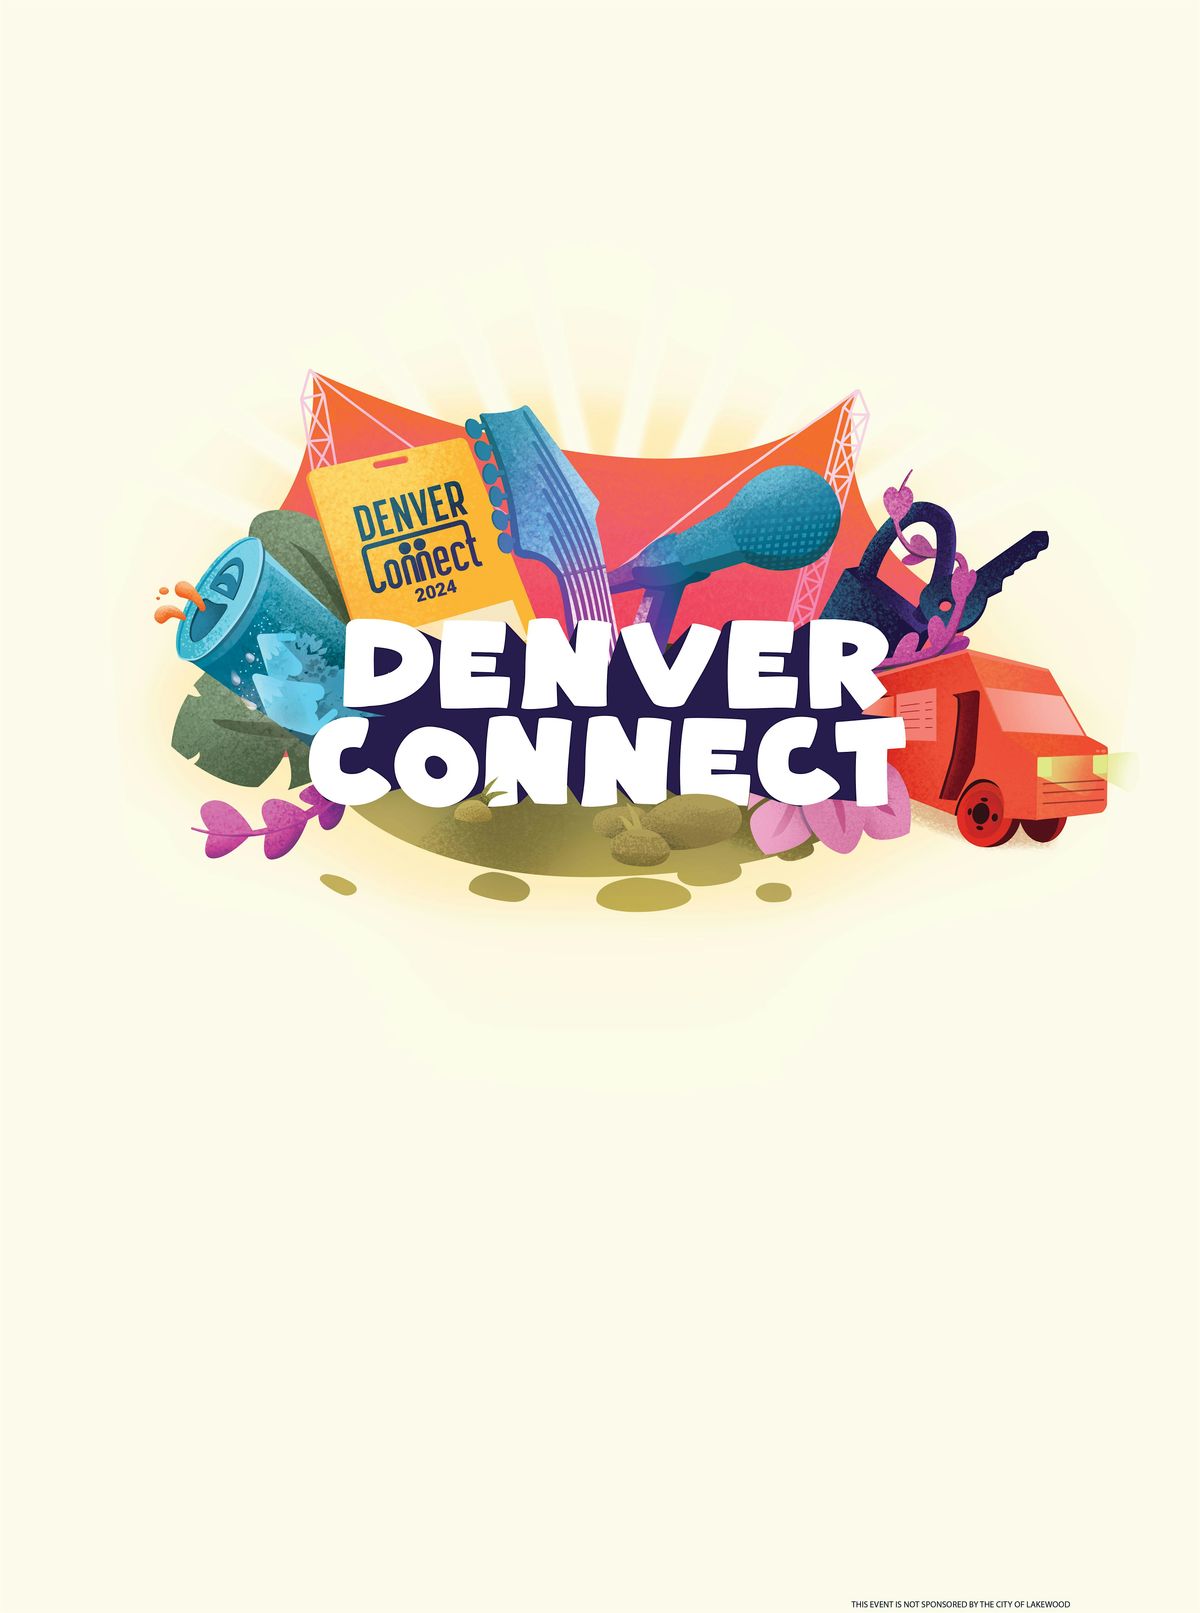 Denver Connect